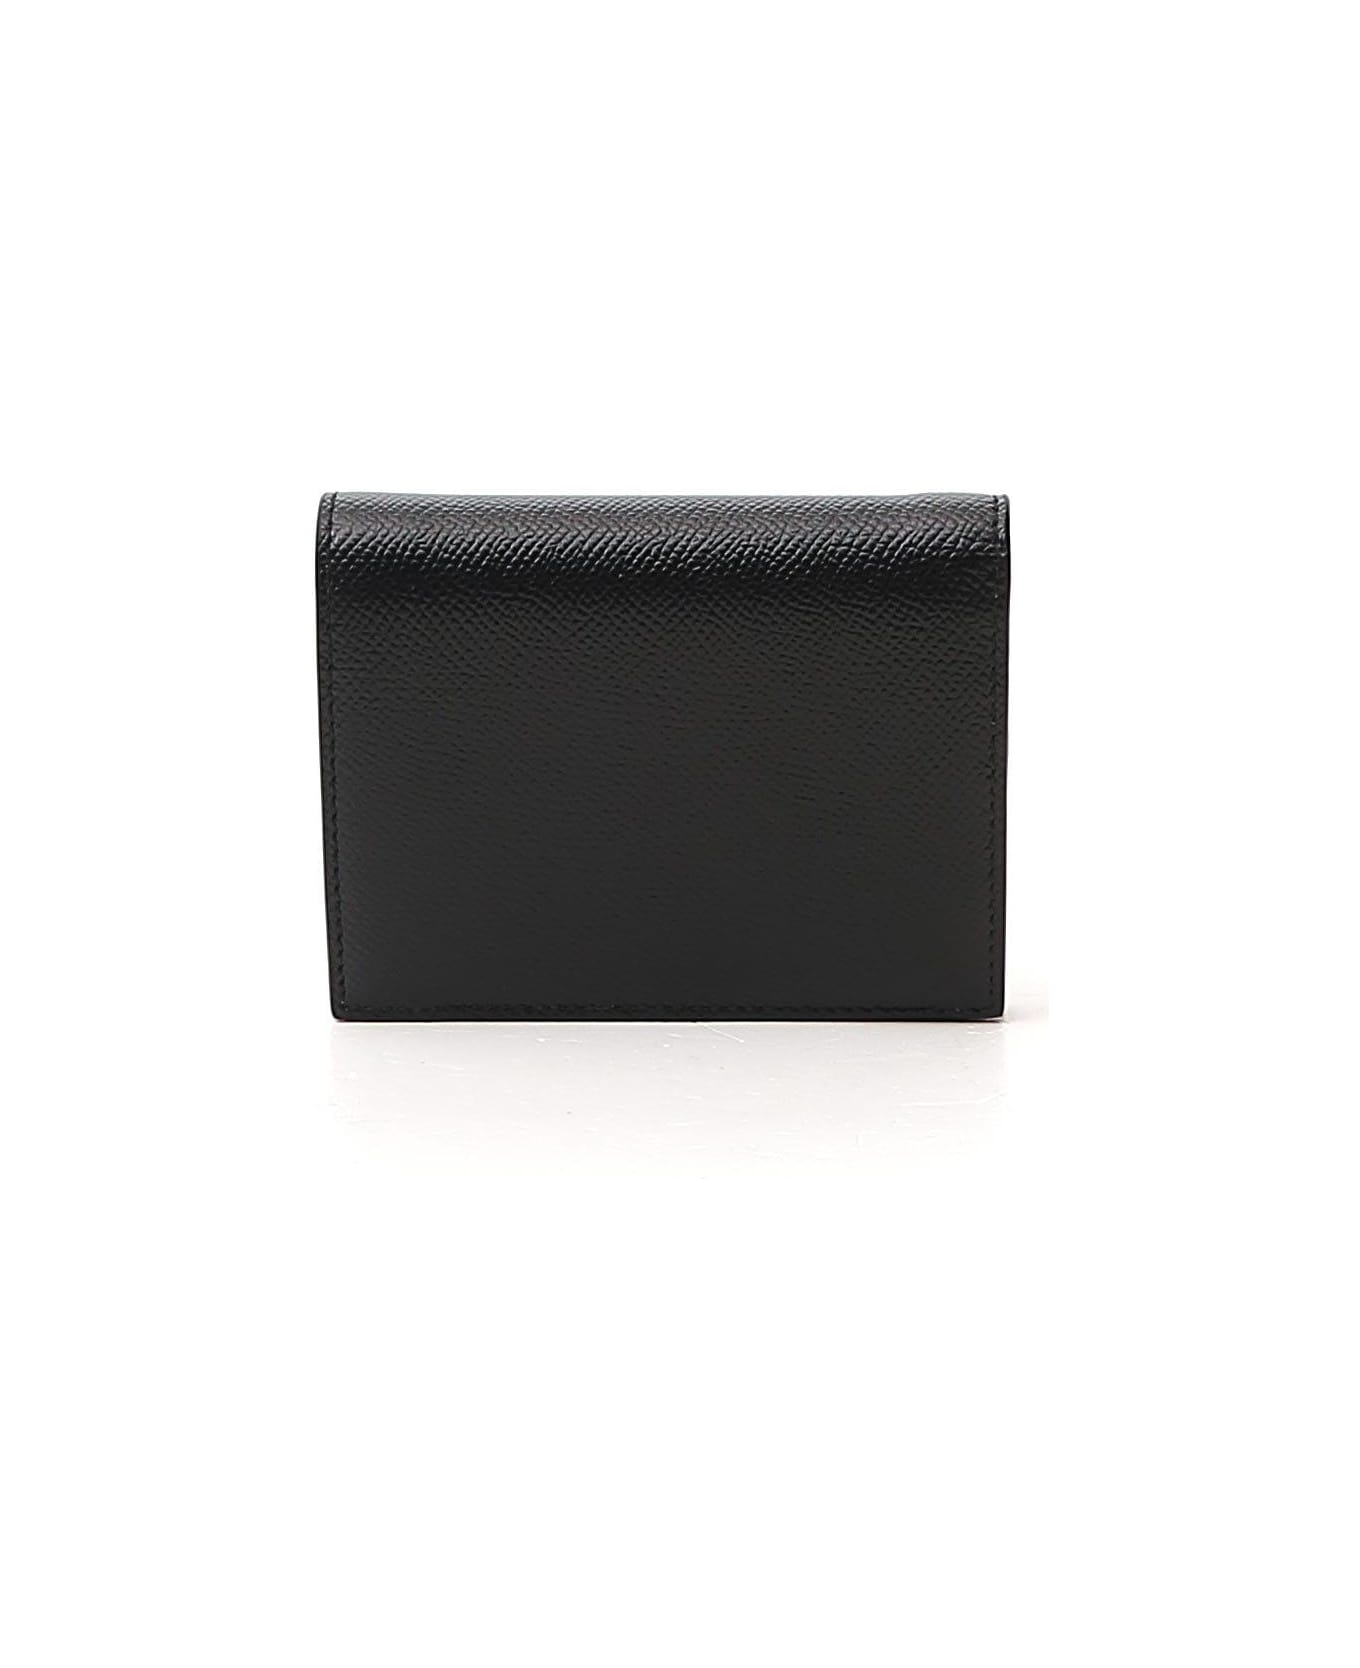 Ferragamo Gancini Compact Wallet - Nero 財布